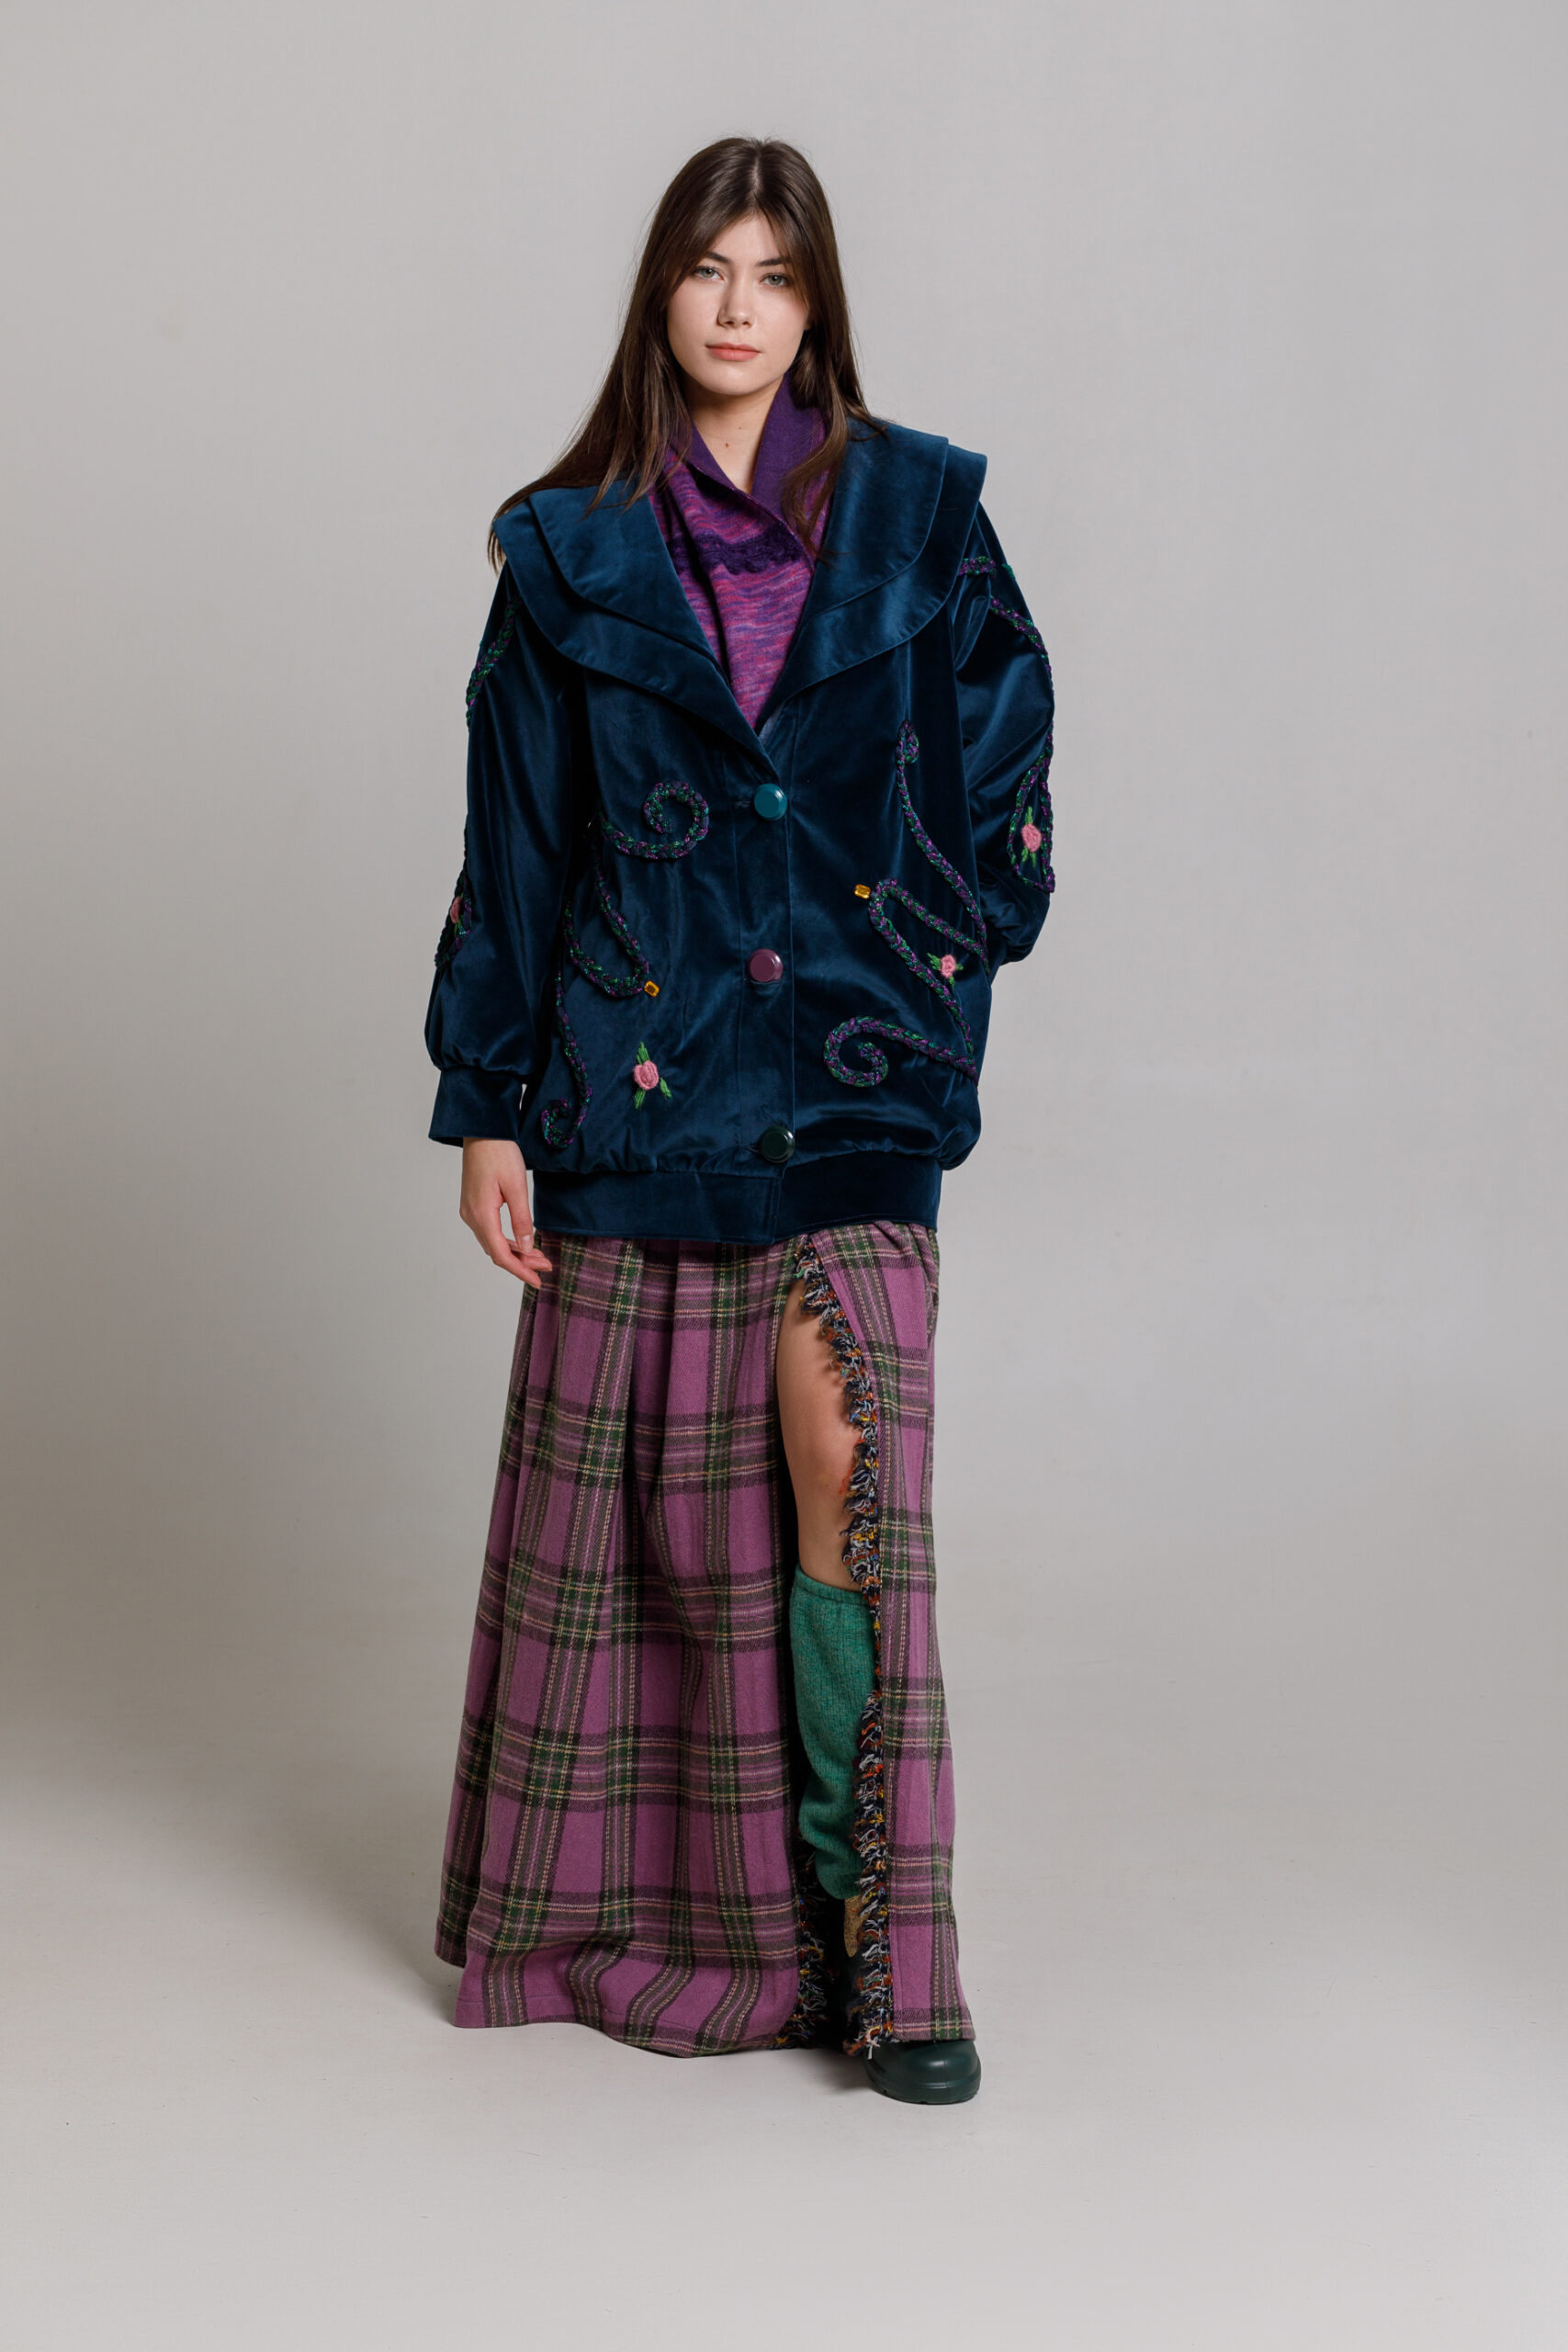 Jachetă ZINNIA elegantă din catifea bleumarin. Materiale naturale, design unicat, cu broderie si aplicatii handmade